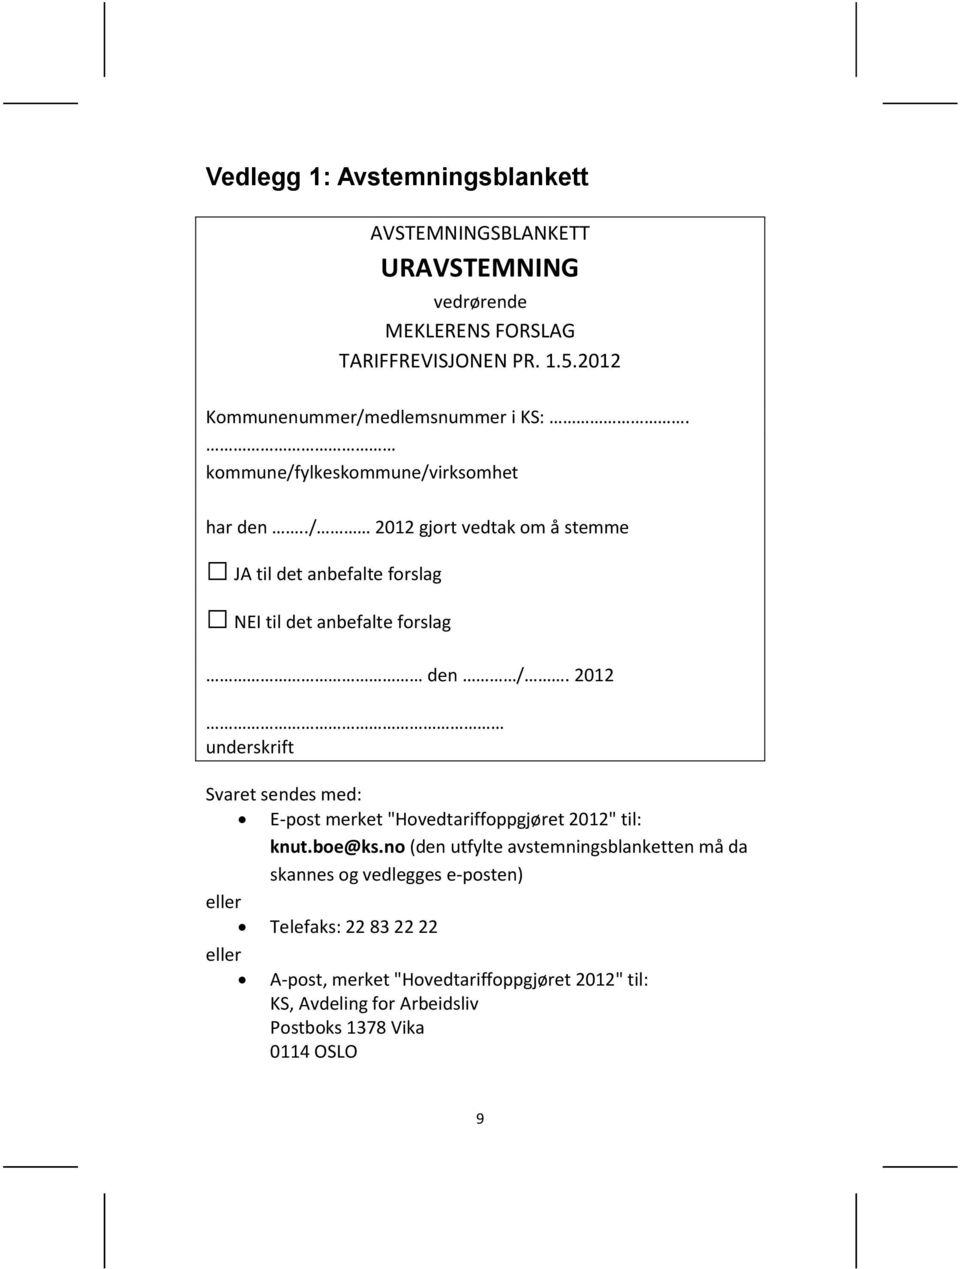 ./ 2012 gjort vedtak om å stemme JA til det anbefalte forslag NEI til det anbefalte forslag den /.